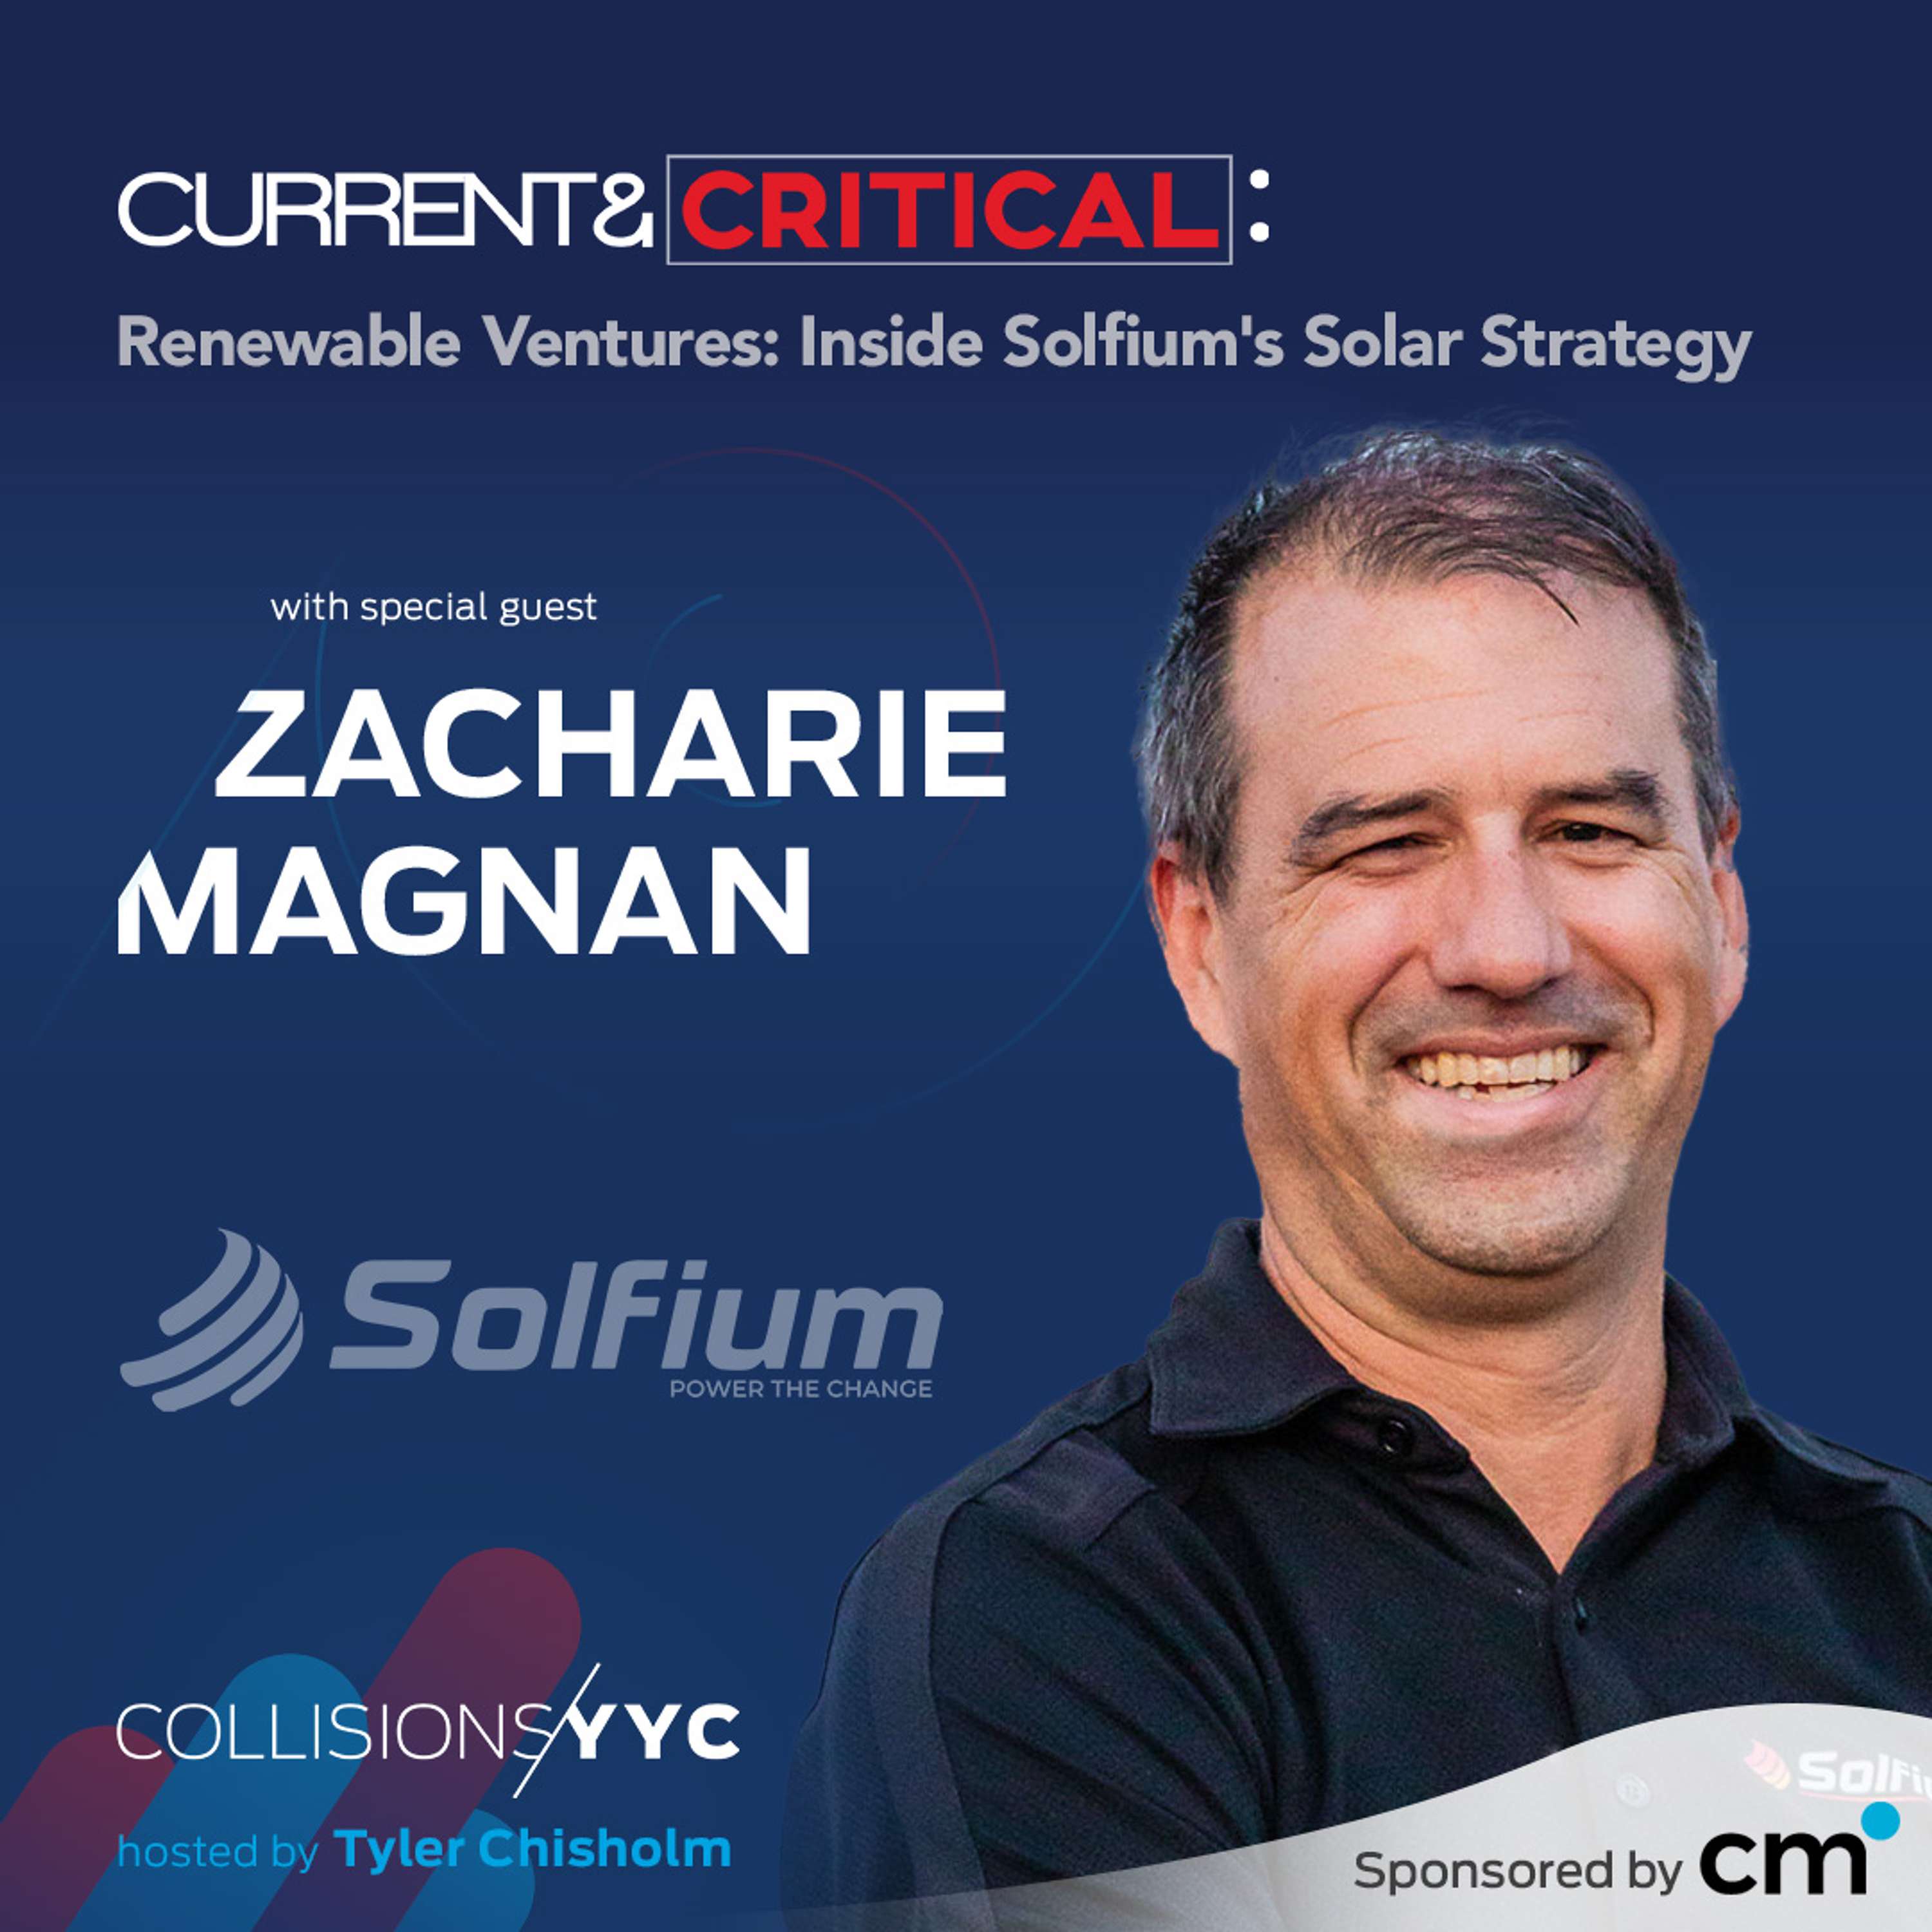 Zacharie Magnan, Renewable Ventures: Inside Solfium's Solar Strategy